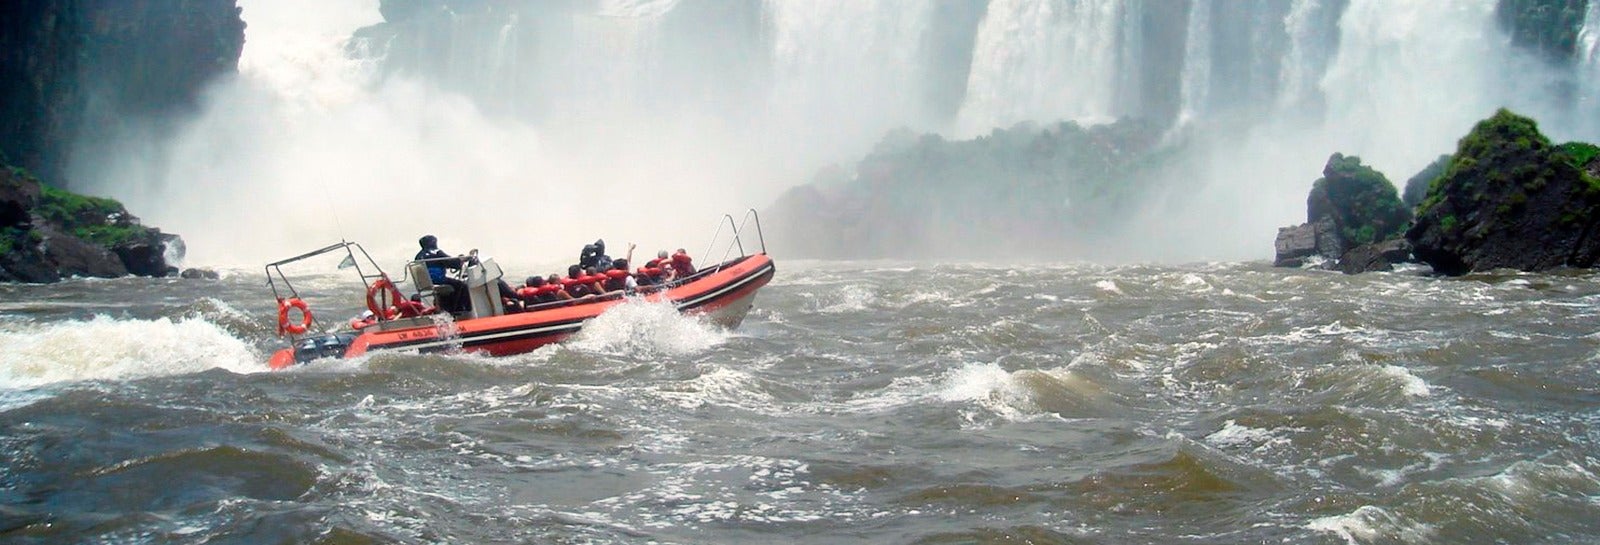 Tour de aventura pelo lado argentino das Cataratas do Iguaçu